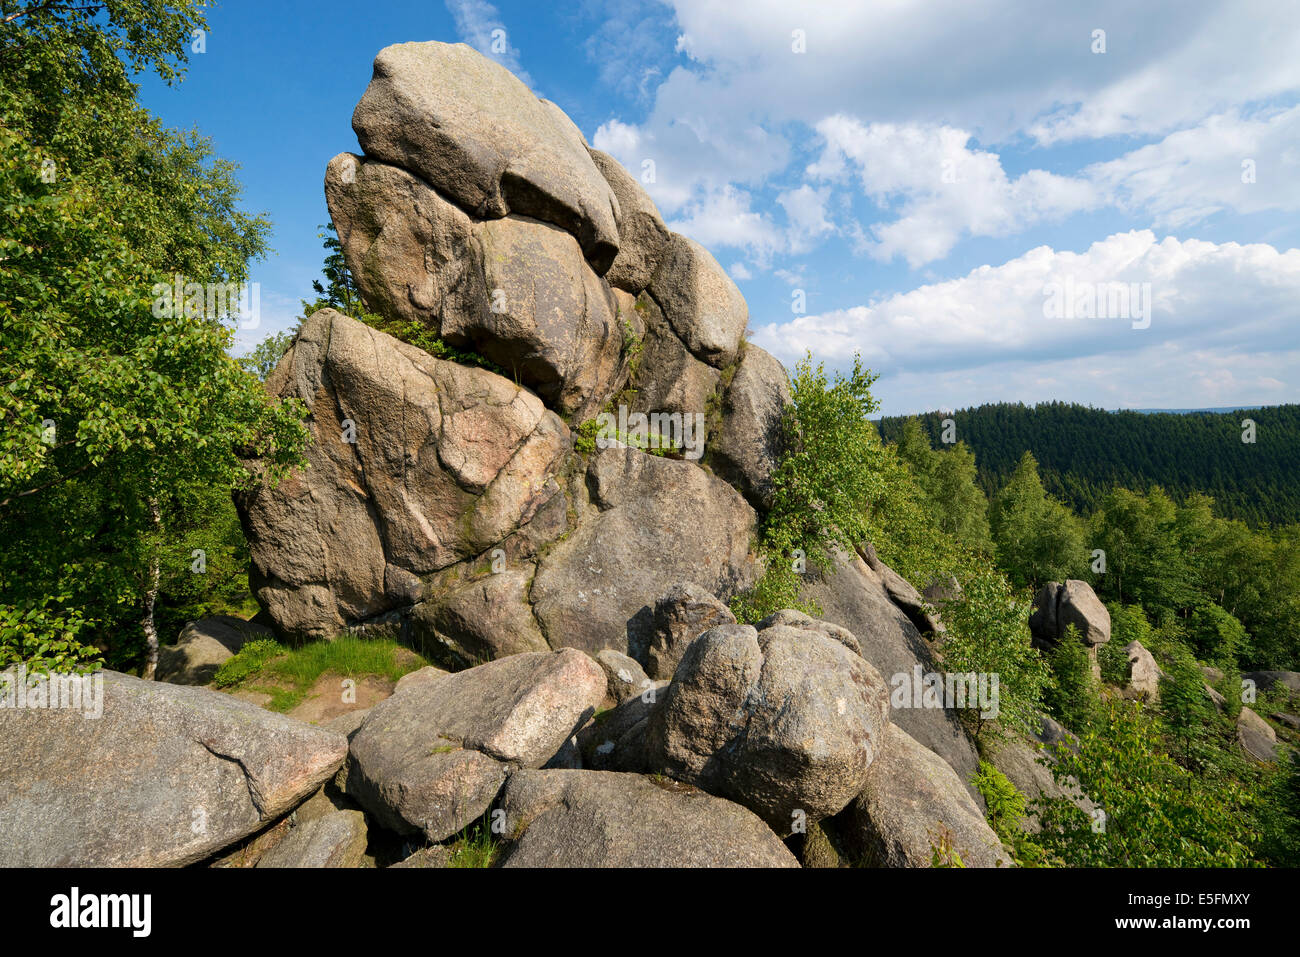 Feigenbaumklippe Feigenbaumkanzel ou granit, rock, près de Goslar, Harz, Basse-Saxe, Allemagne Banque D'Images